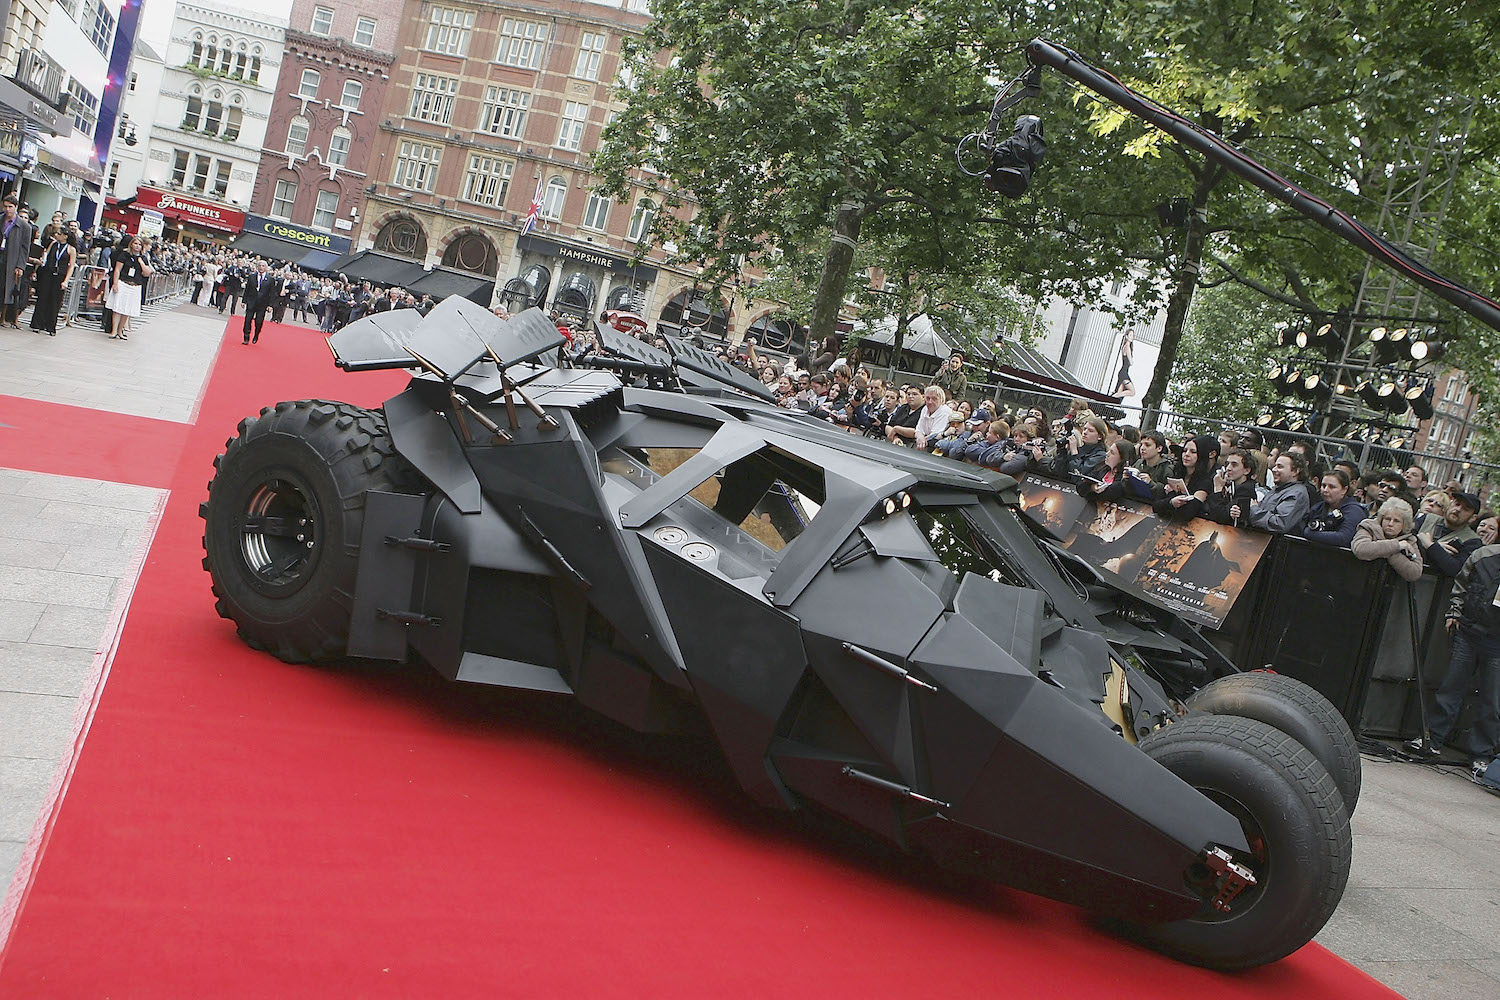 Movie prop Batmobile Tumbler driving the red carpet at the UK premier of Batman Begins.